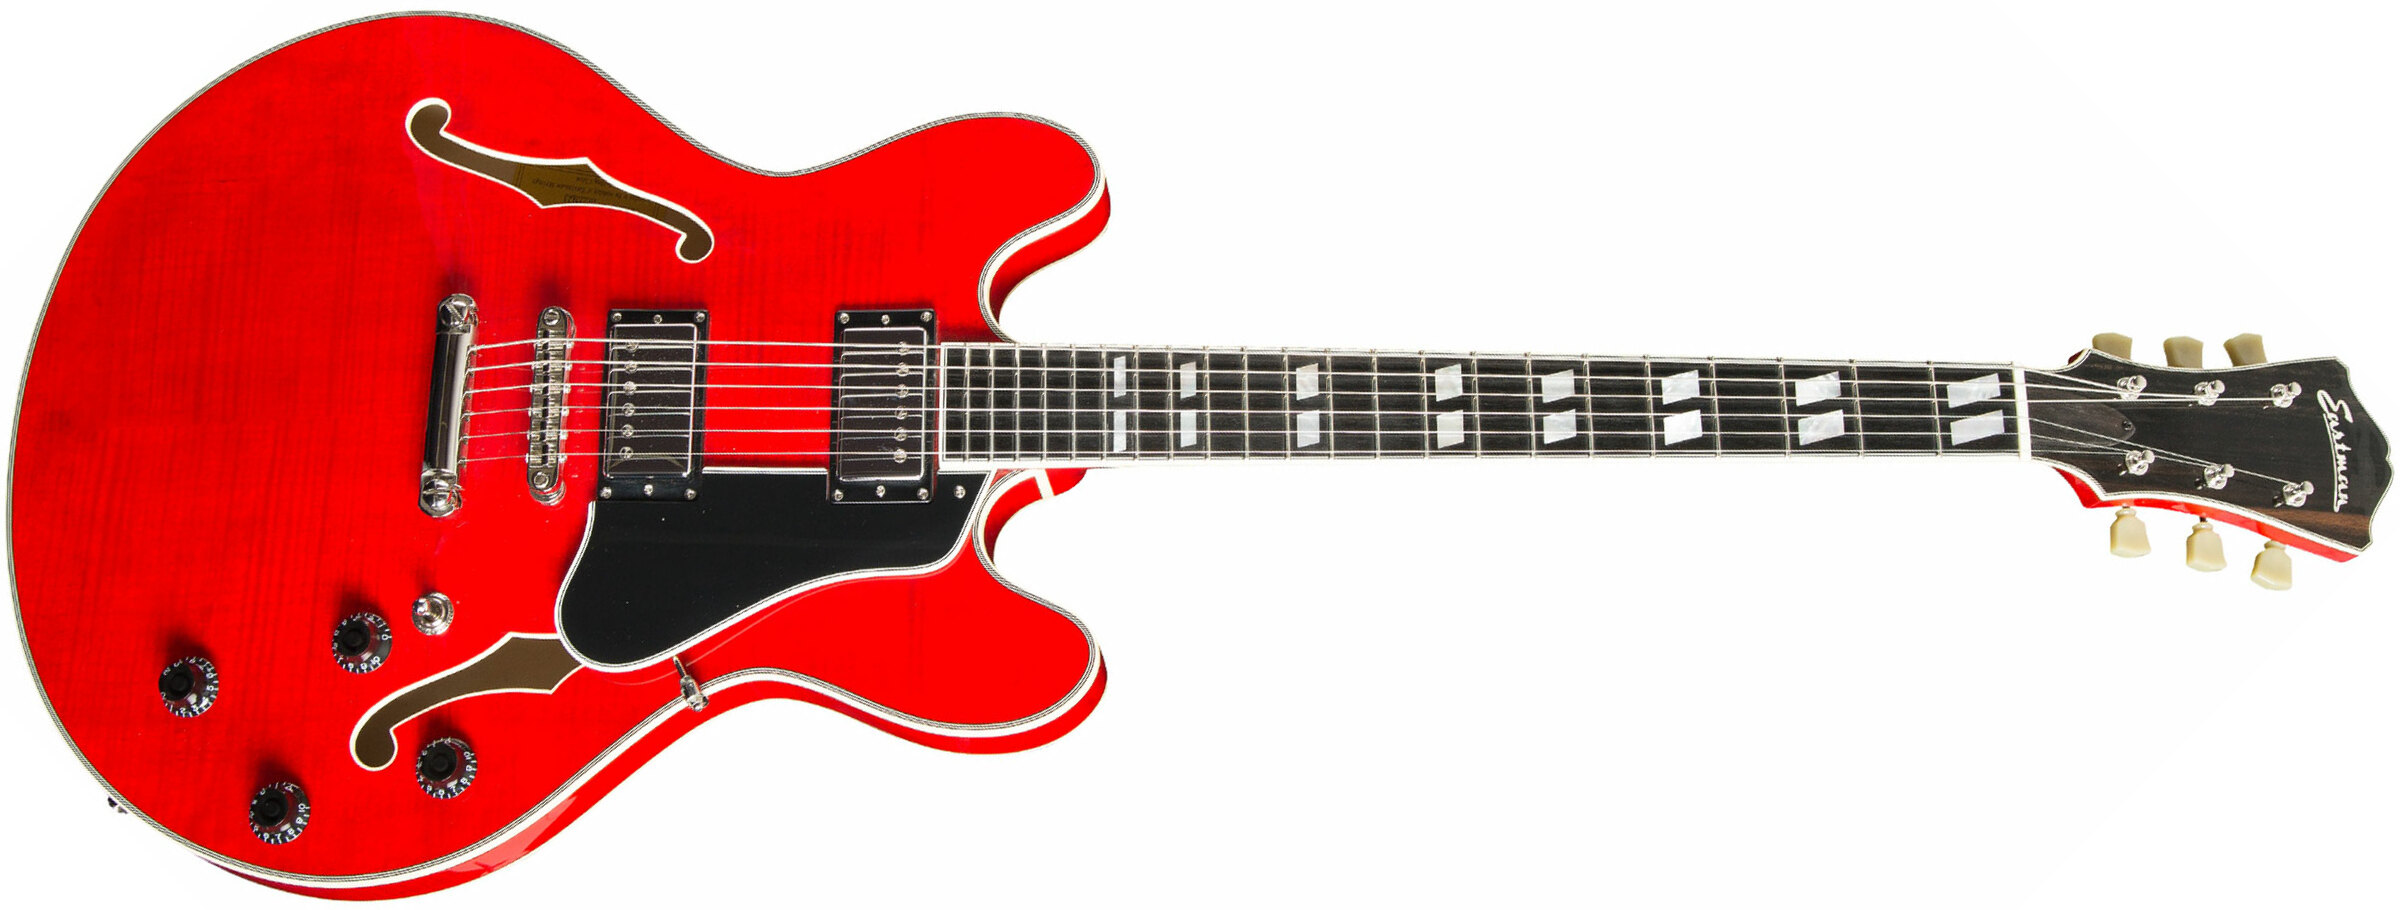 Eastman T486 Thinline Laminate Tout Erable Hh Seymour Duncan Ht Eb - Red - Guitarra eléctrica semi caja - Main picture